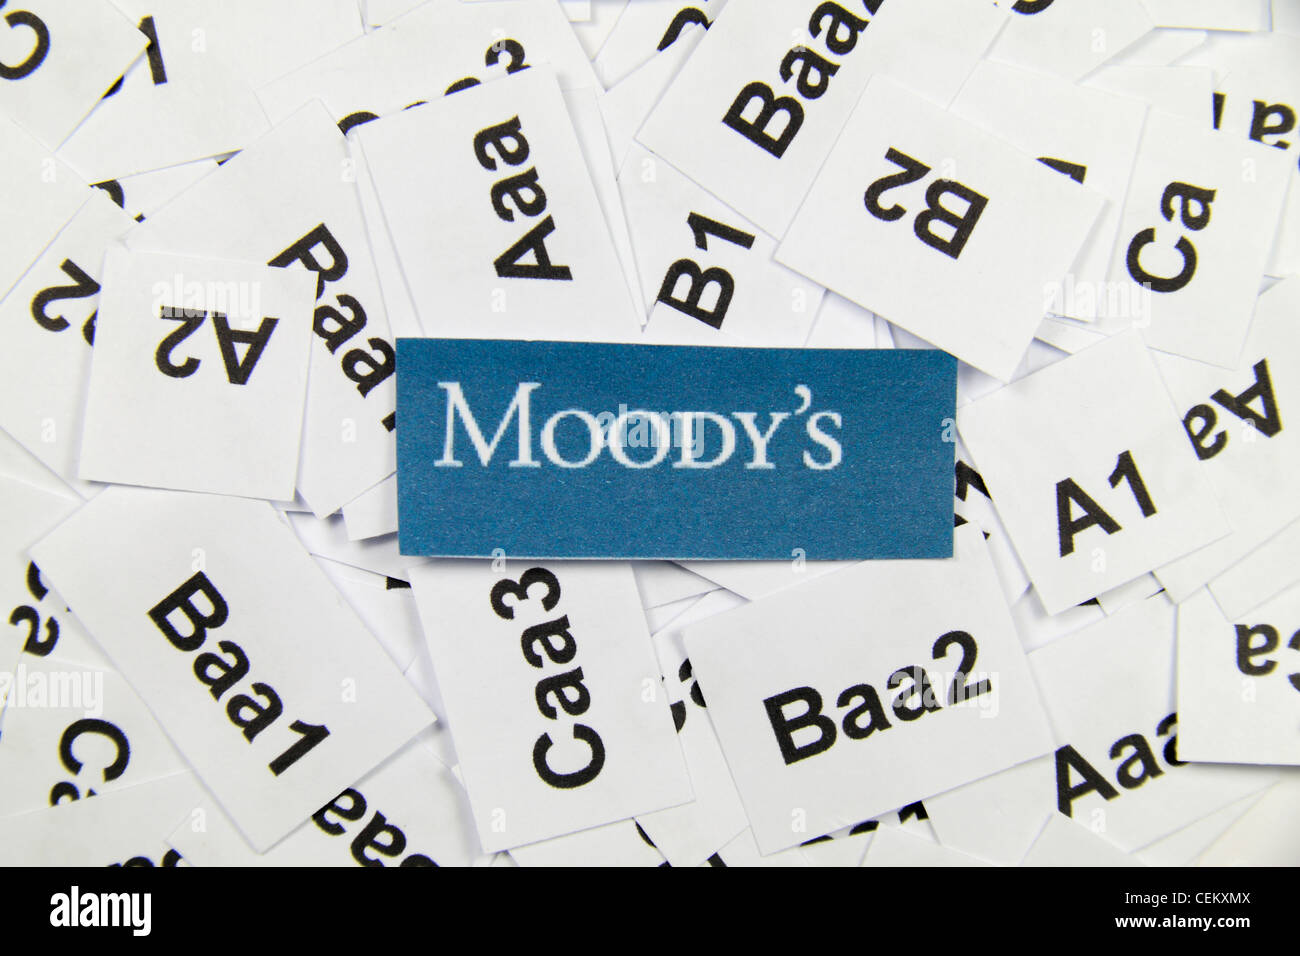 El logotipo de Moody's (la agencia de riesgo crediticio), sobre un lecho de las calificaciones crediticias utilizadas por ellos para evaluar empresas. Foto de stock